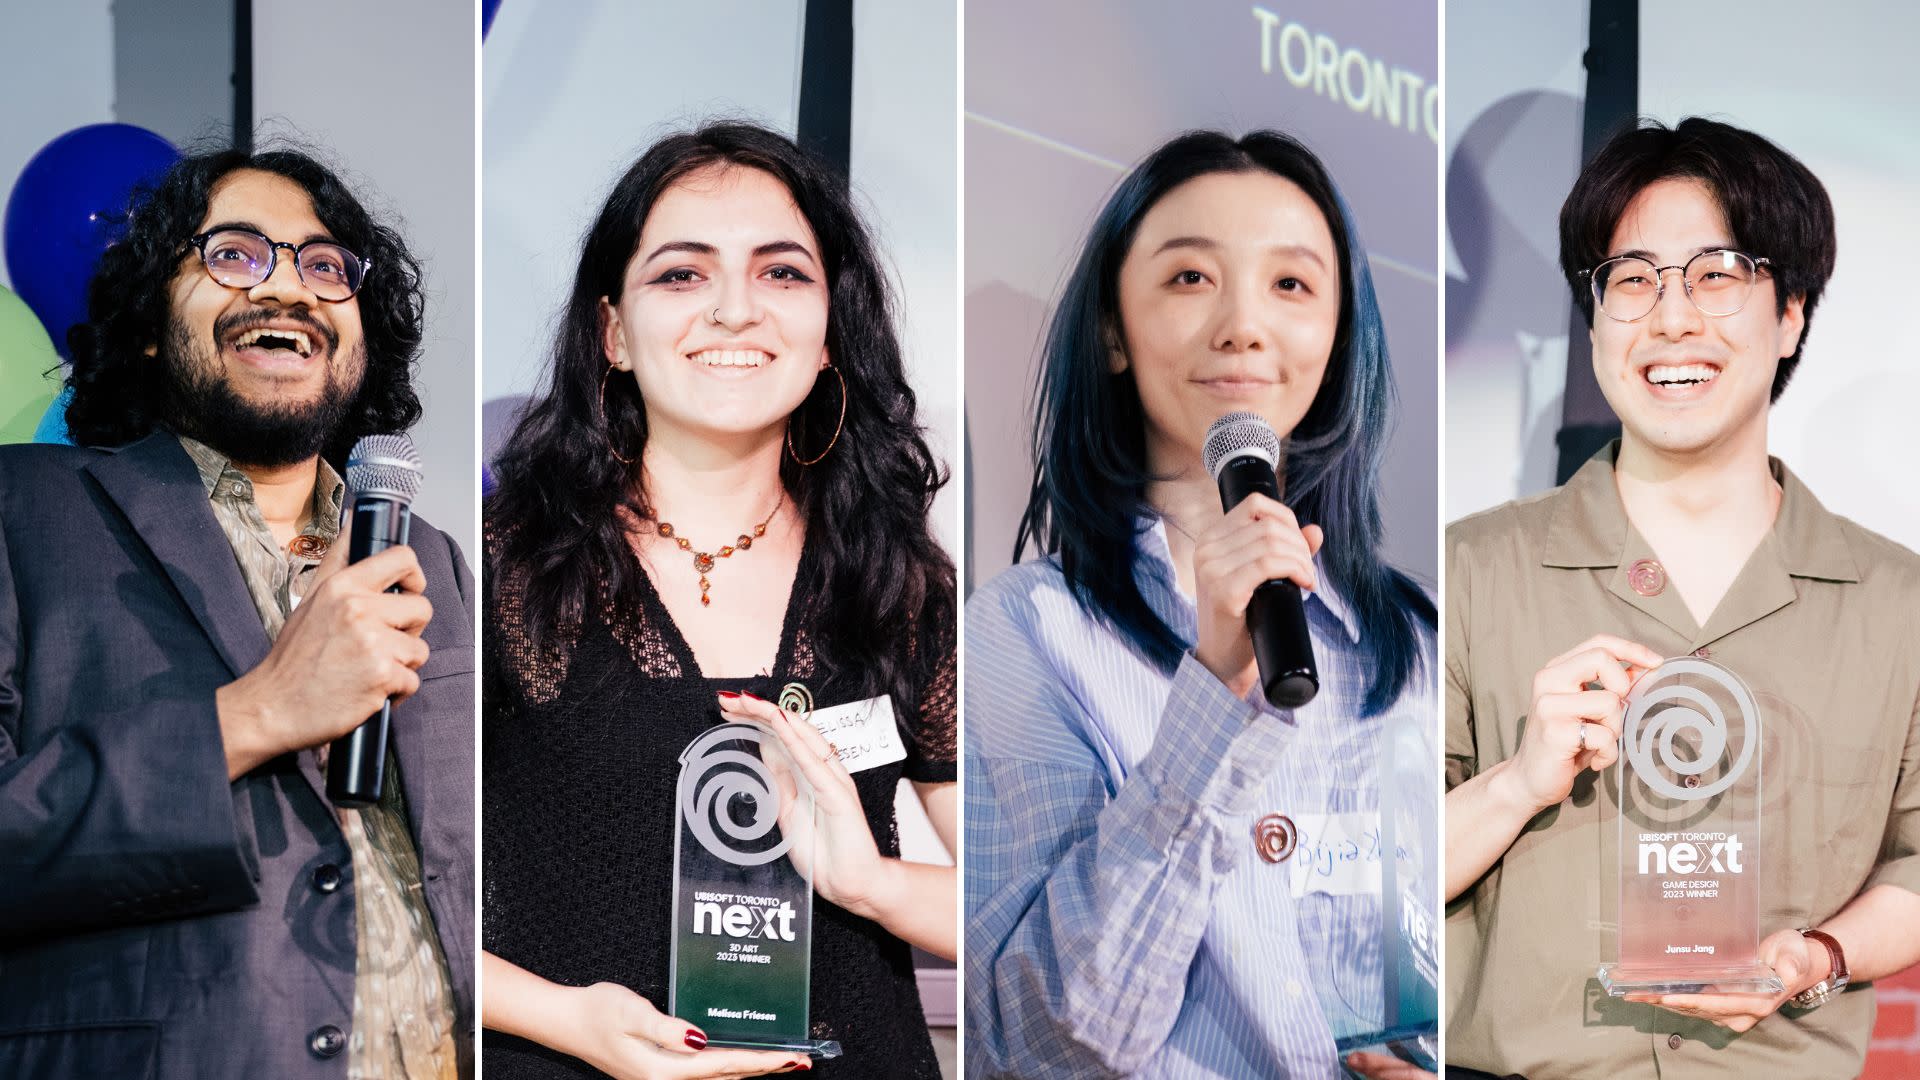 Percer dans l'industrie du jeu vidéo : Les gagnants du concours Ubisoft Toronto NEXT partagent leur expérience